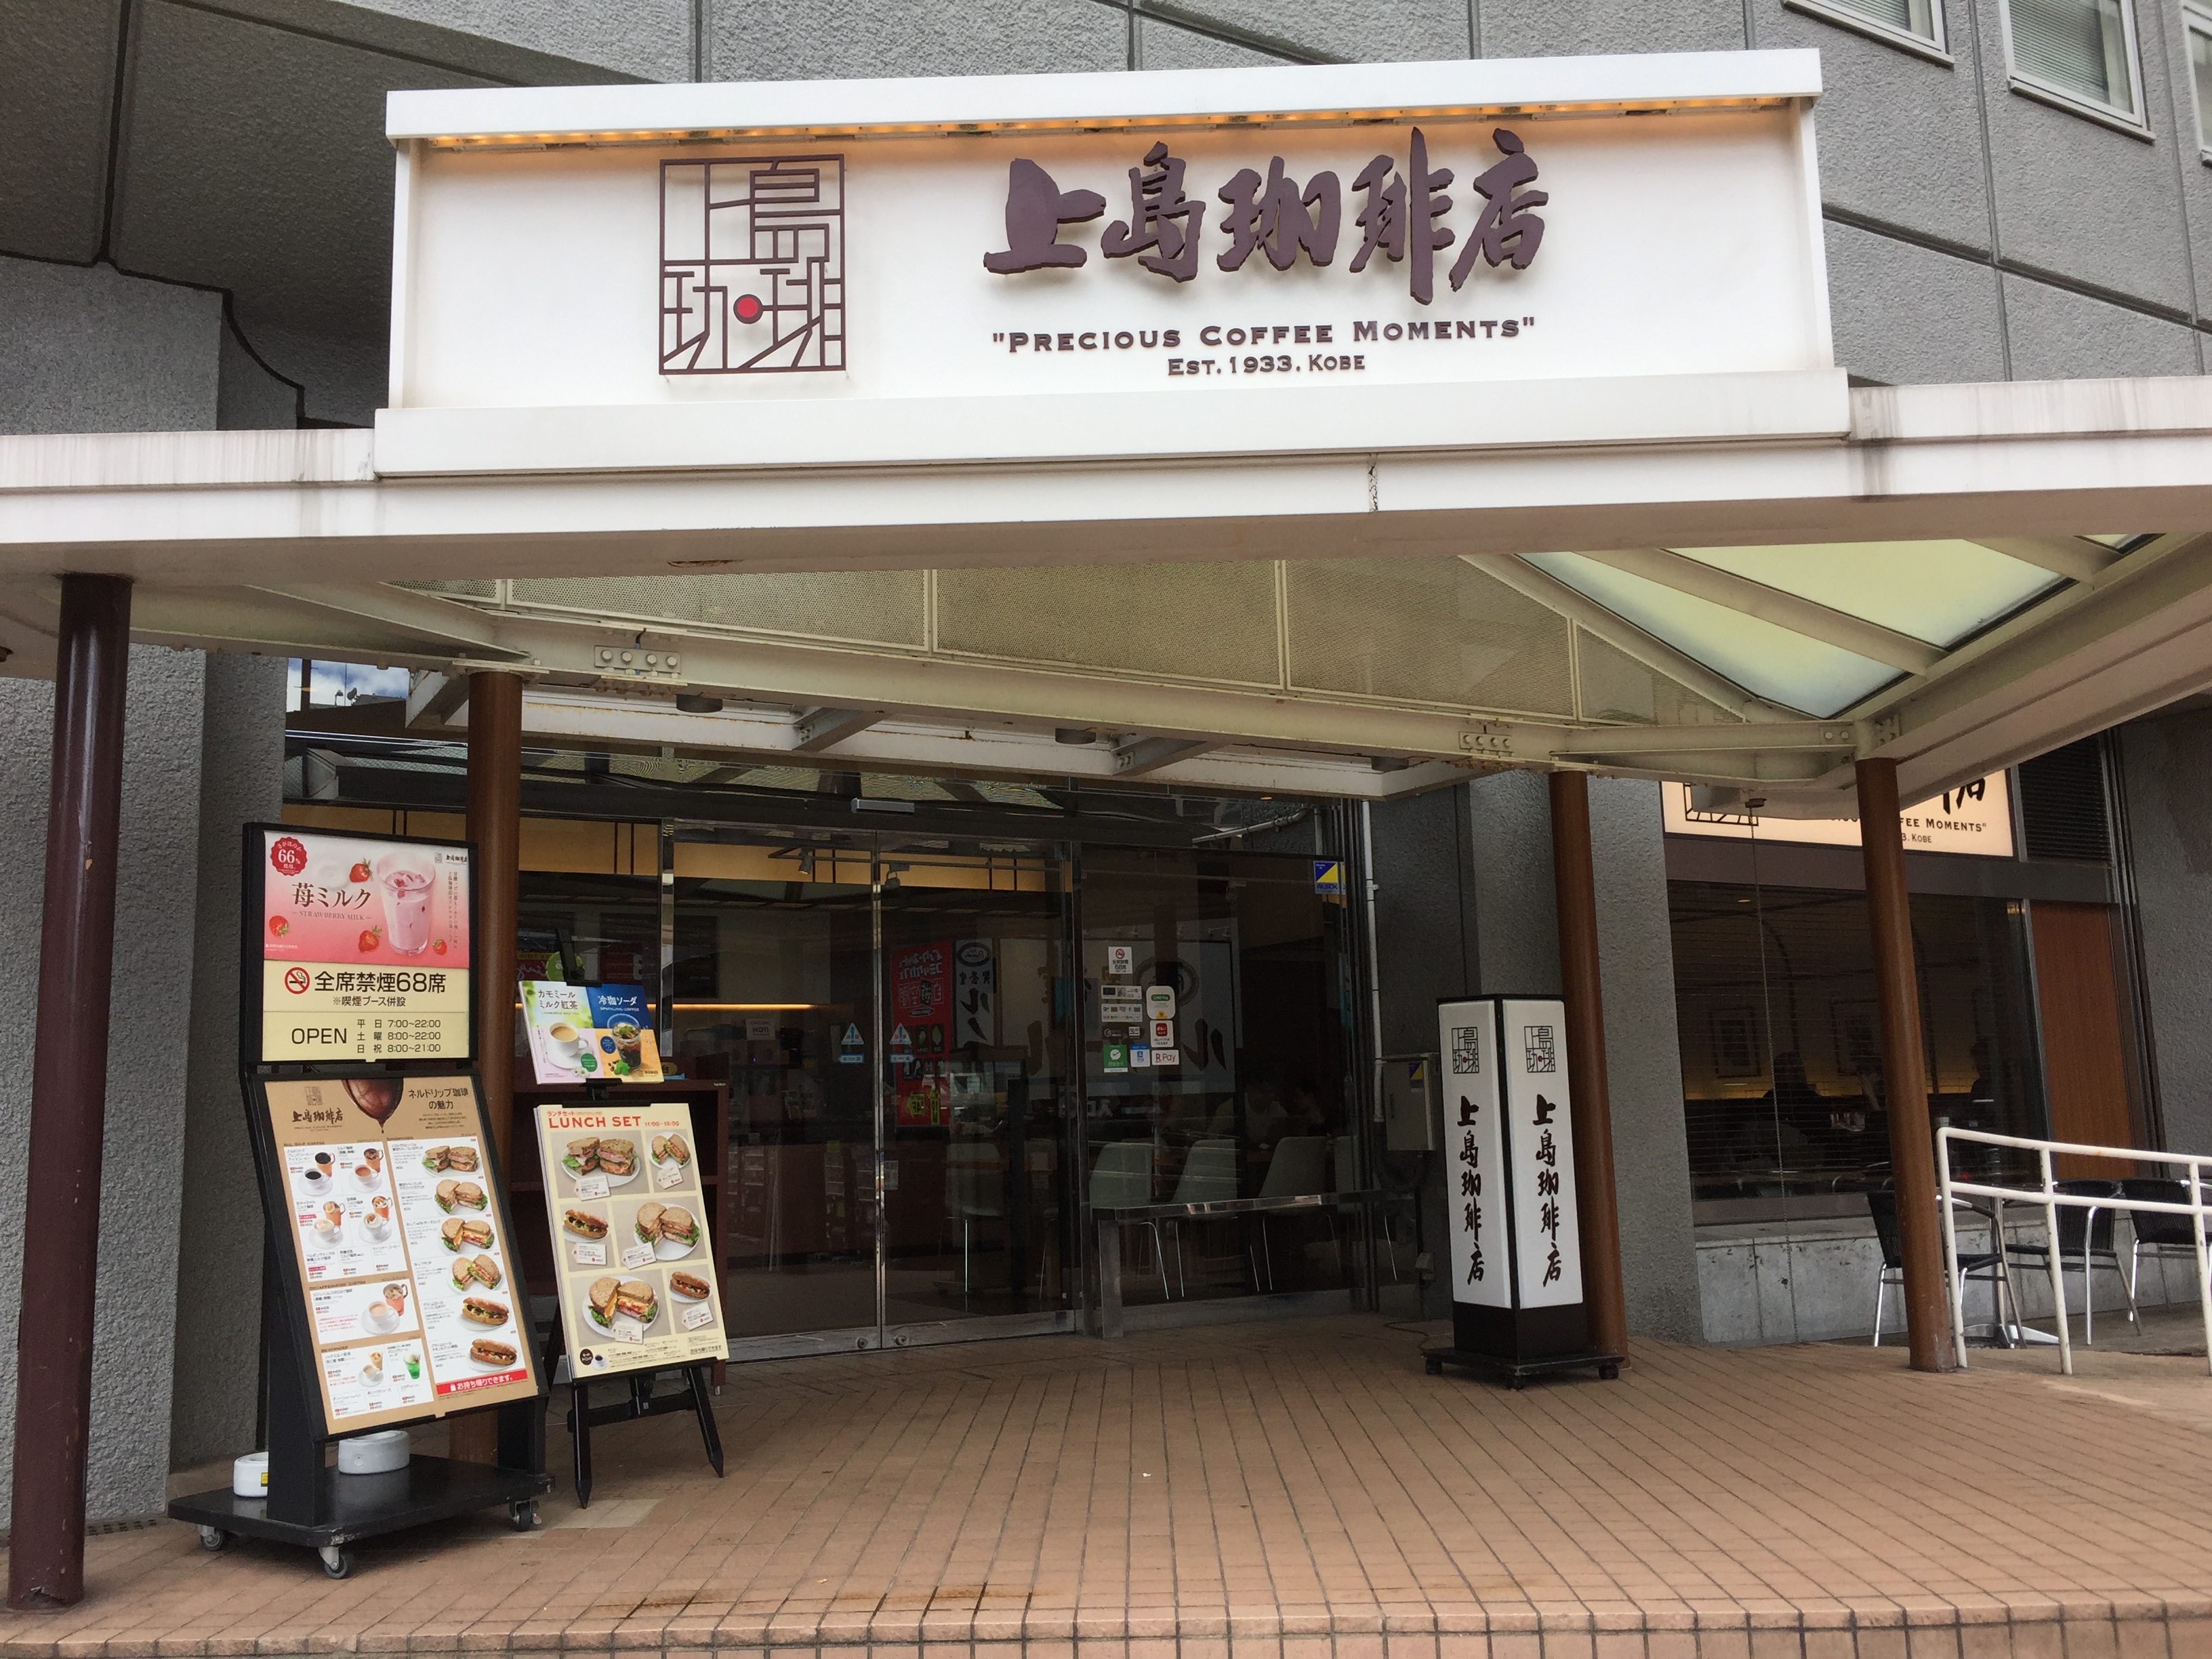 横浜駅 勉強できるカフェ 地味型ノマドワーカーの作り方